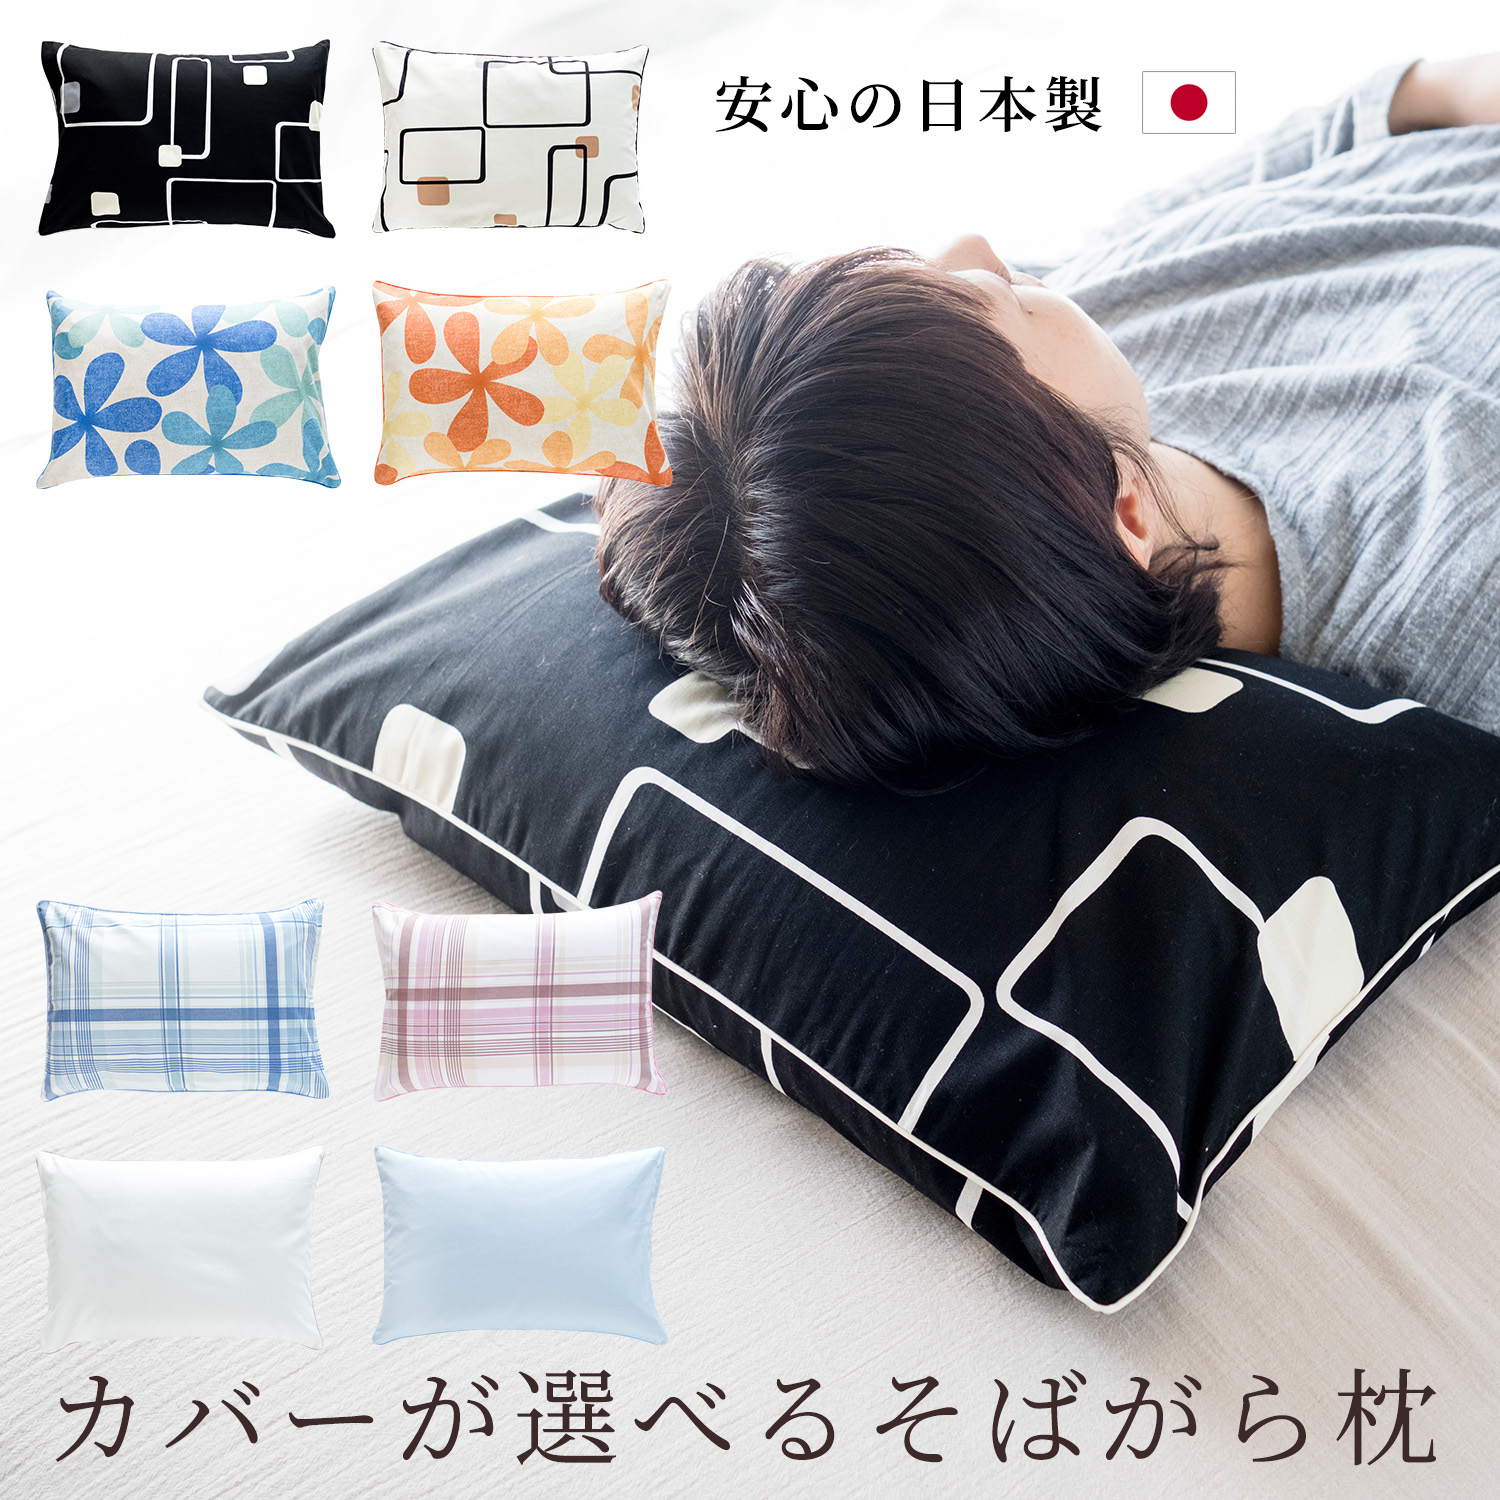 枕 まくら お手玉枕 ごろ寝 パイプ枕 日本製 小さめ 携帯 ミニ枕 小枕